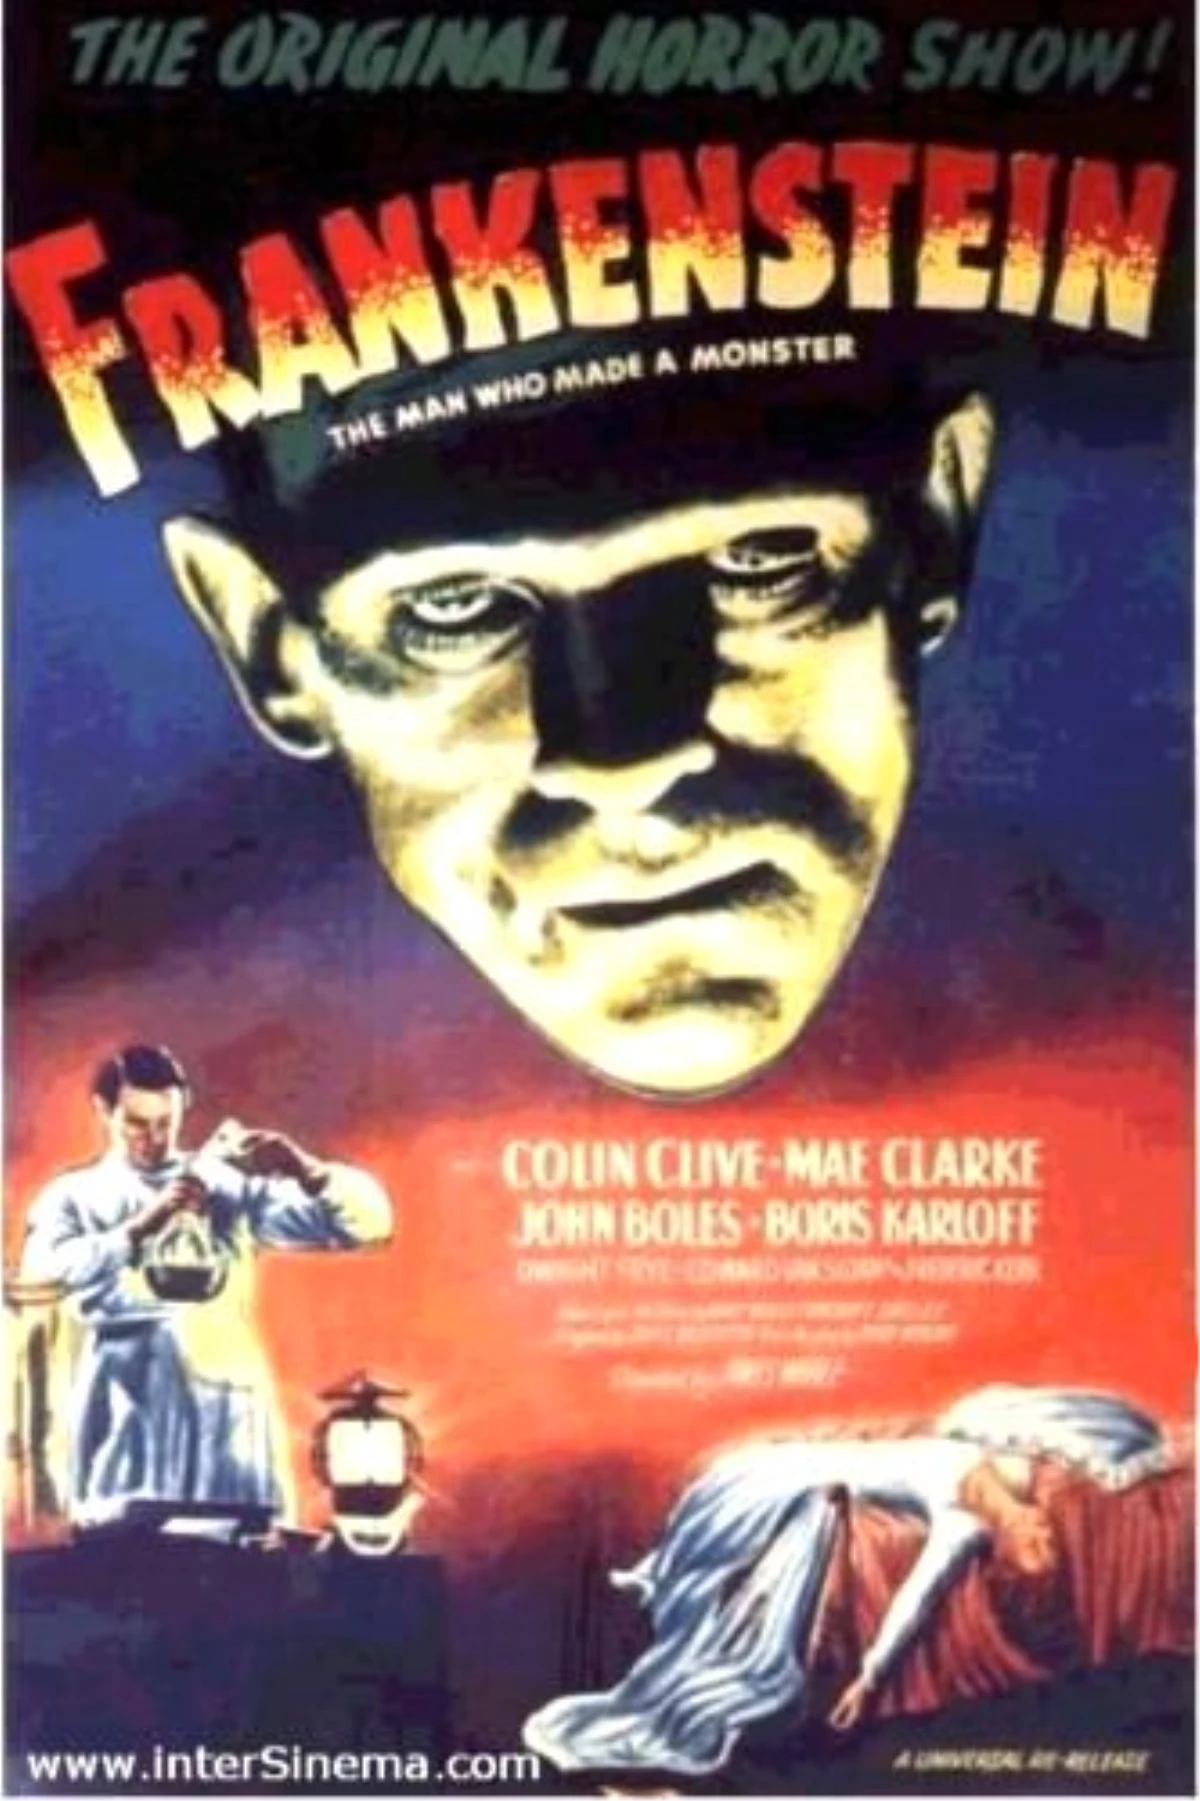 Frankenstein Filmi